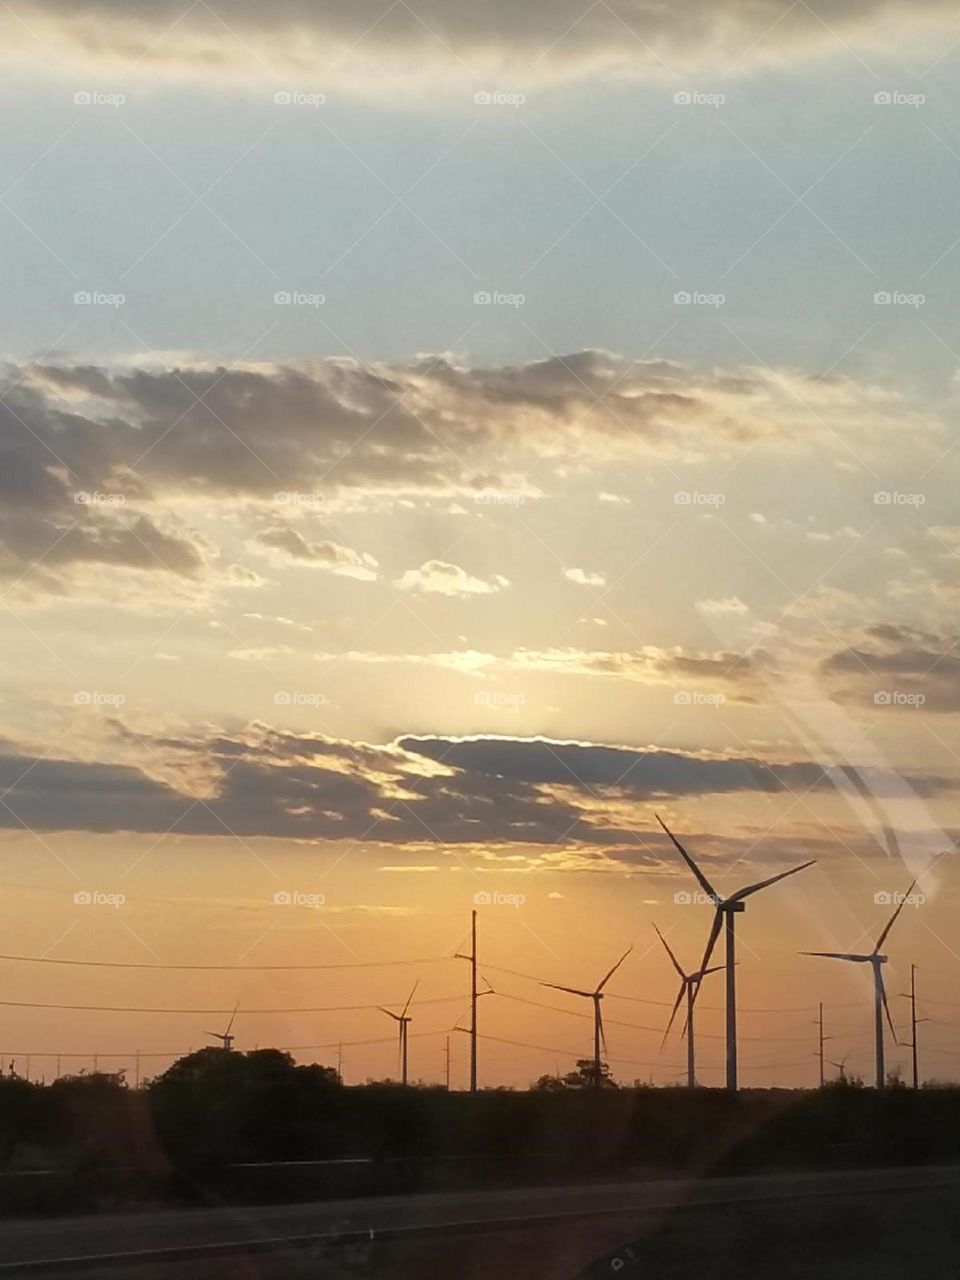 wind mills turning in the setting sun